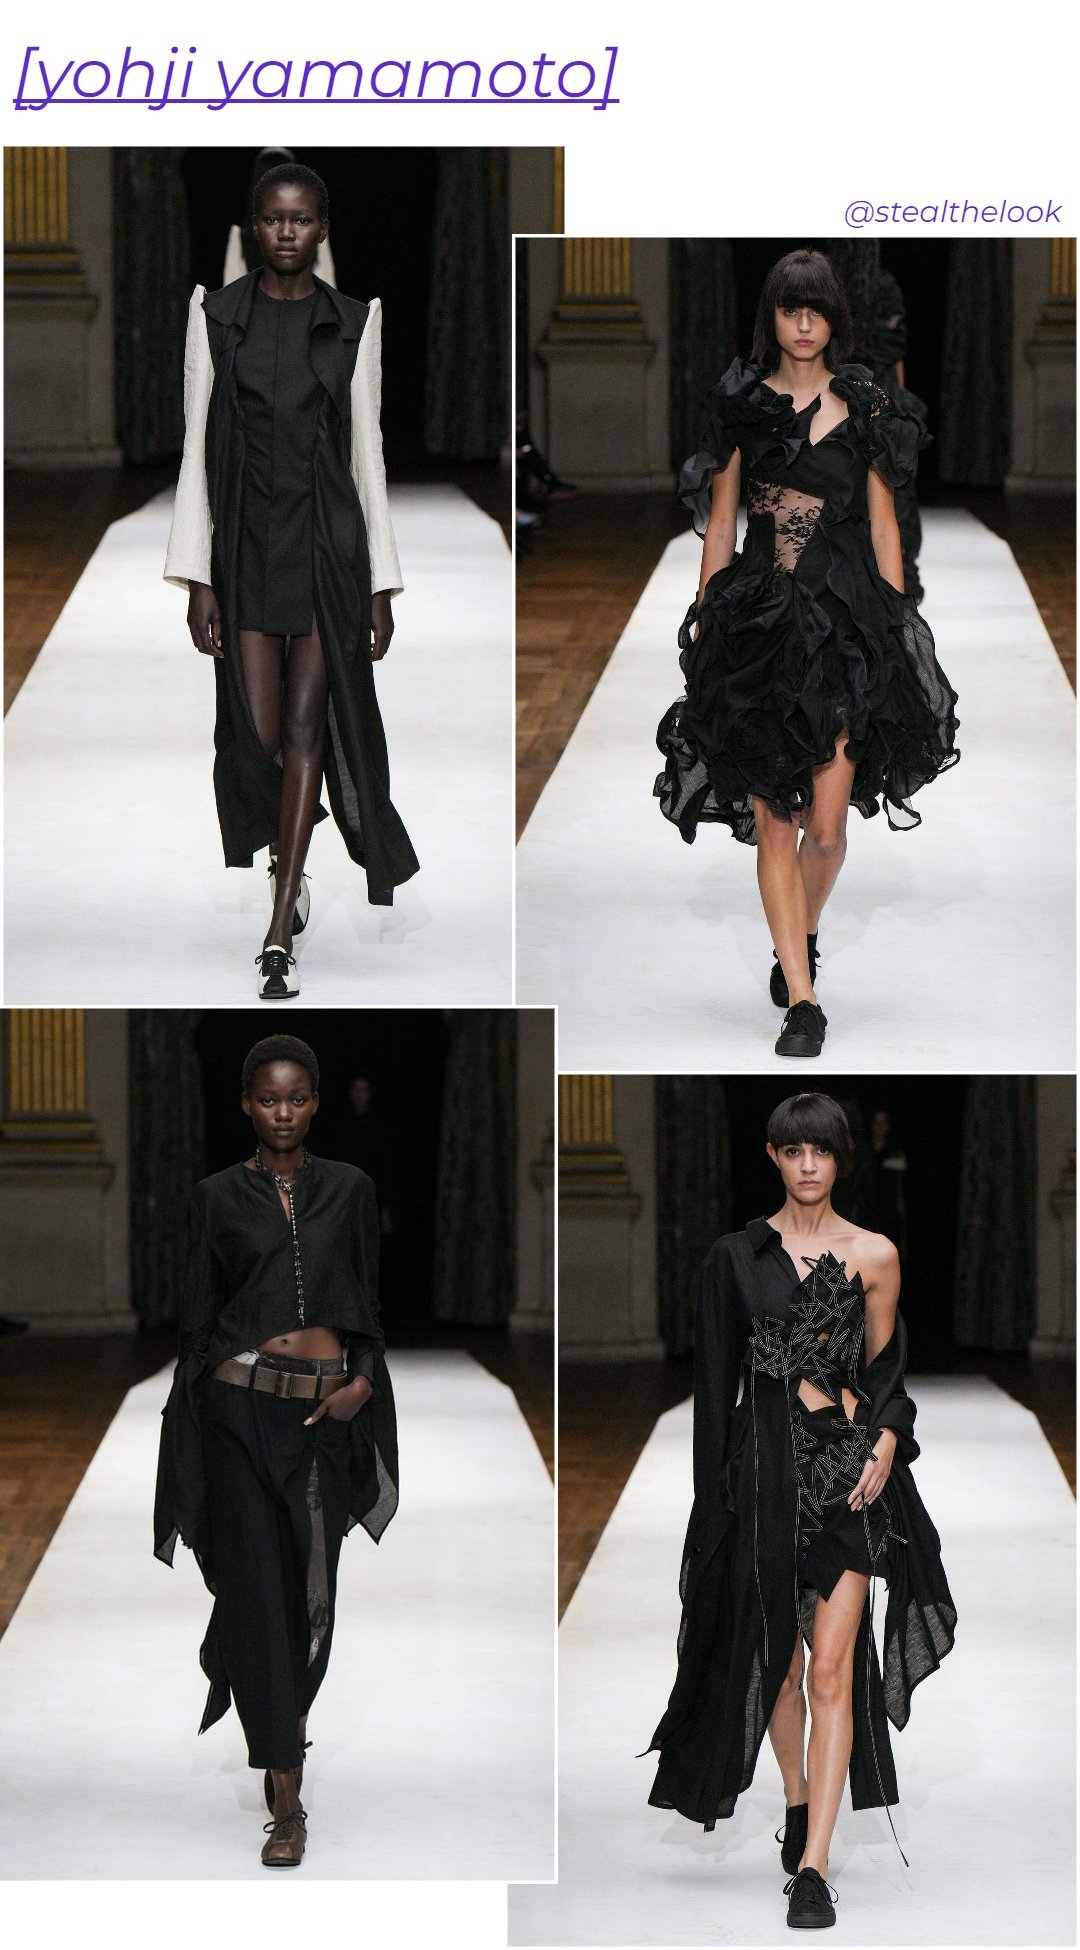 Yohji Yamamoto - roupas diversas - Paris Fashion Week - verão - colagem de imagens - https://stealthelook.com.br